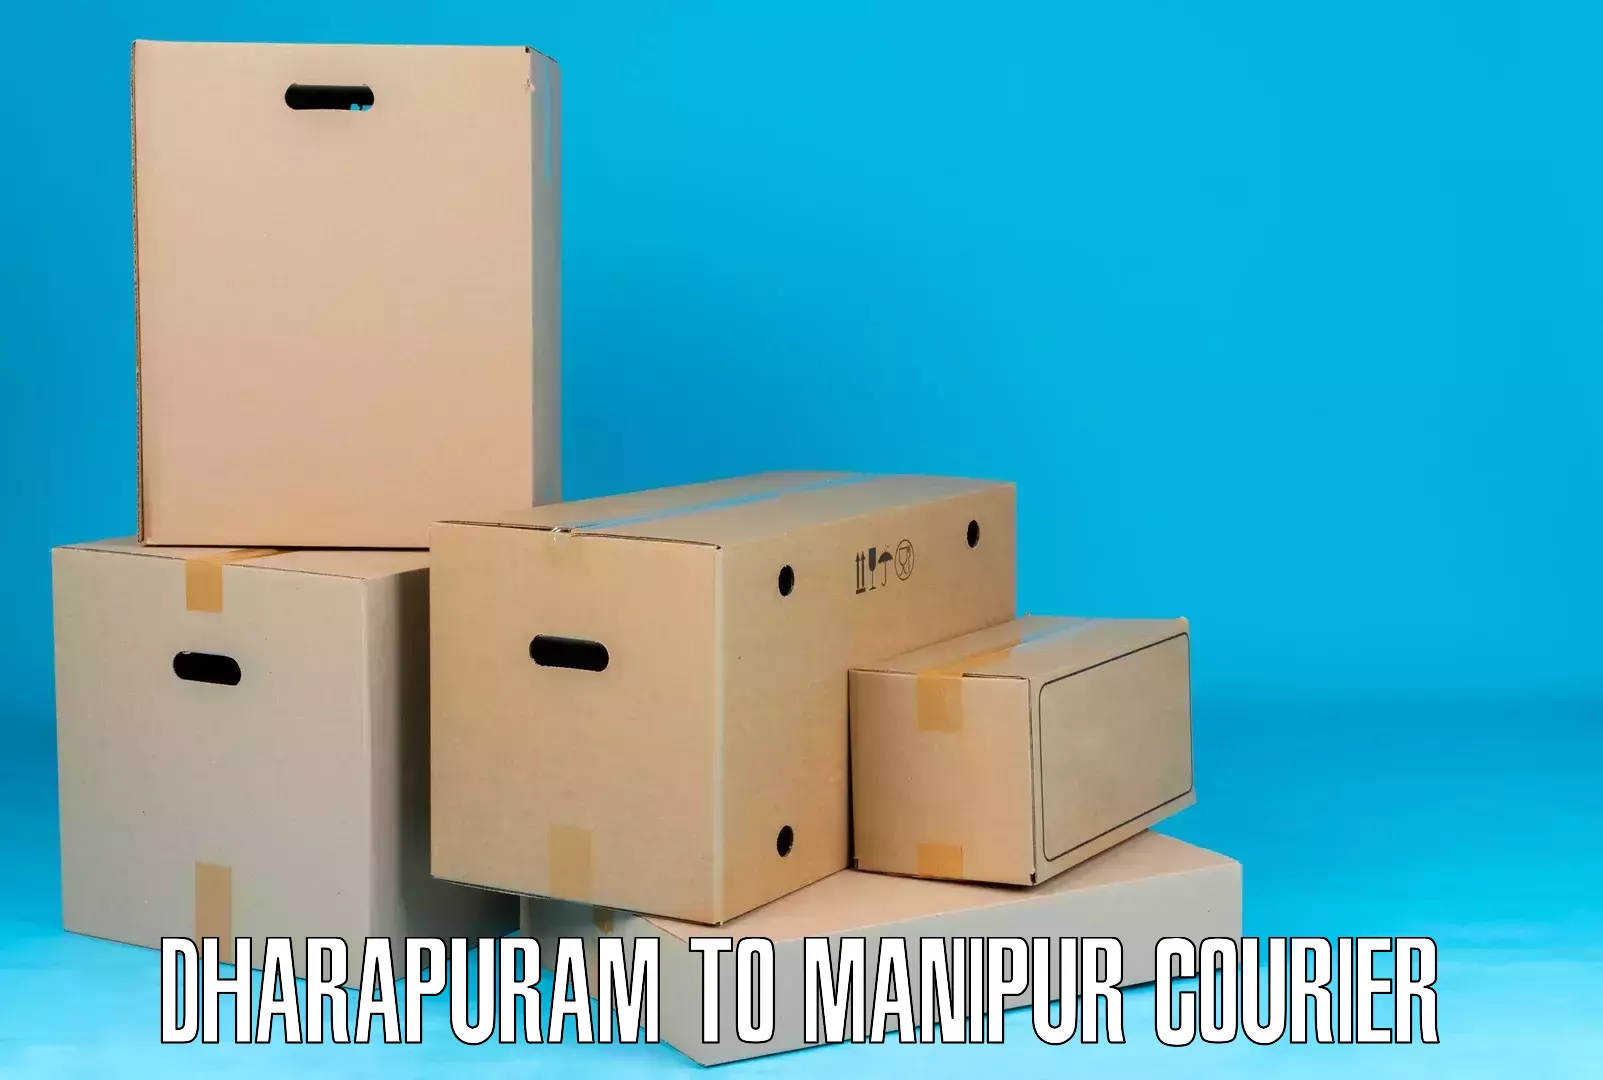 Next-generation courier services Dharapuram to Churachandpur